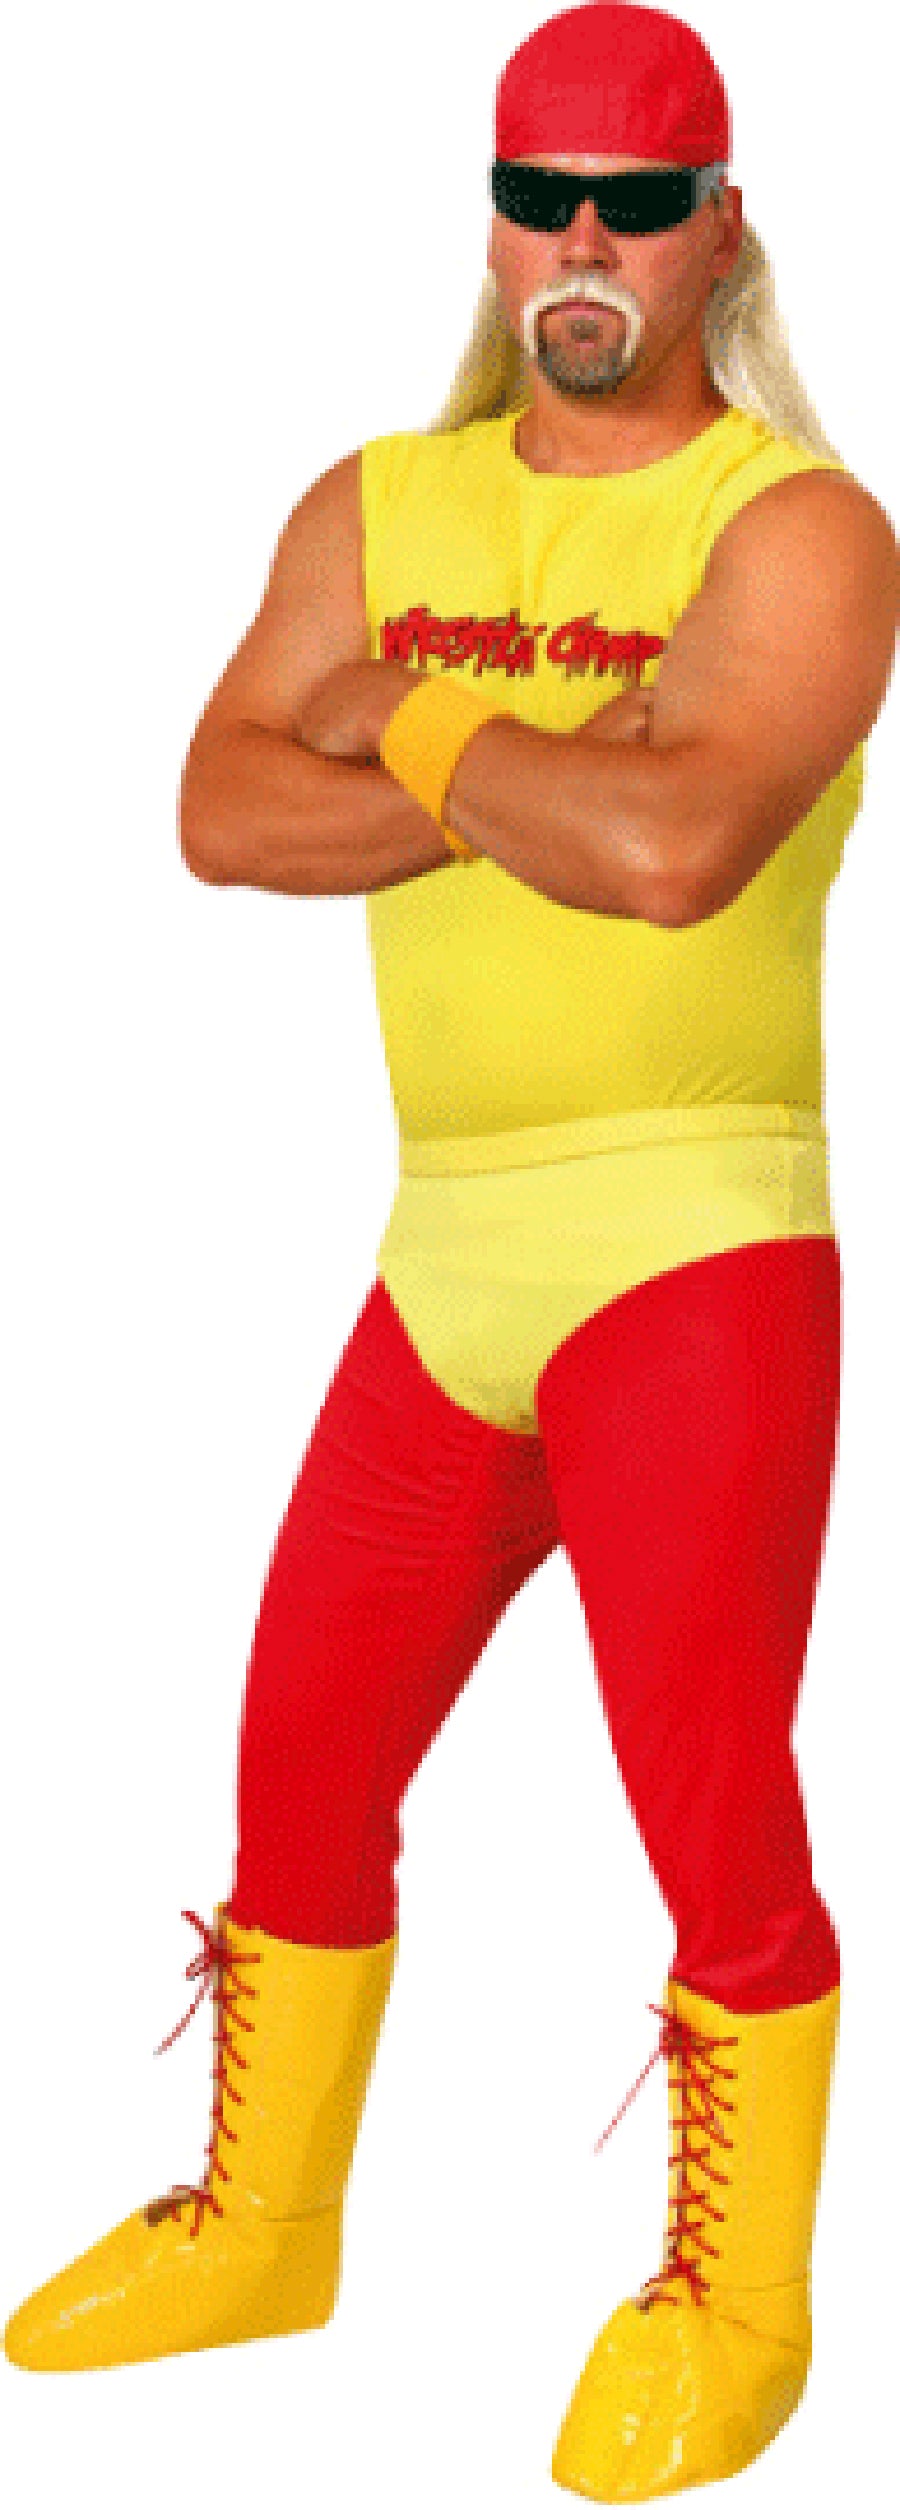 Hulk Hogan Wrestler Costume Perth | Hurly Burly – Hurly-Burly